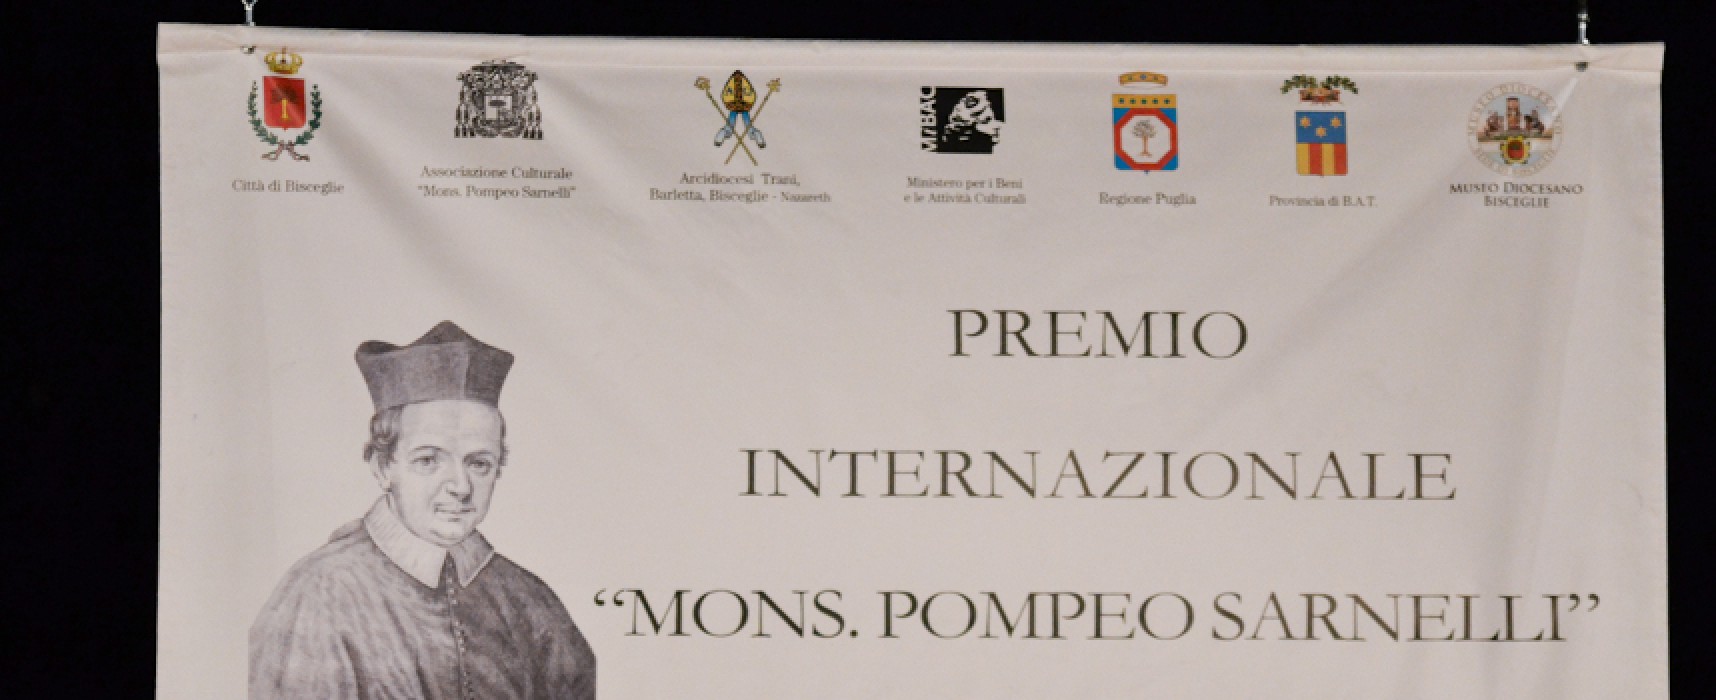 XII Premio “Mons. Pompeo Sarnelli”, nuova location e premio alla memoria a Carlo de Trizio